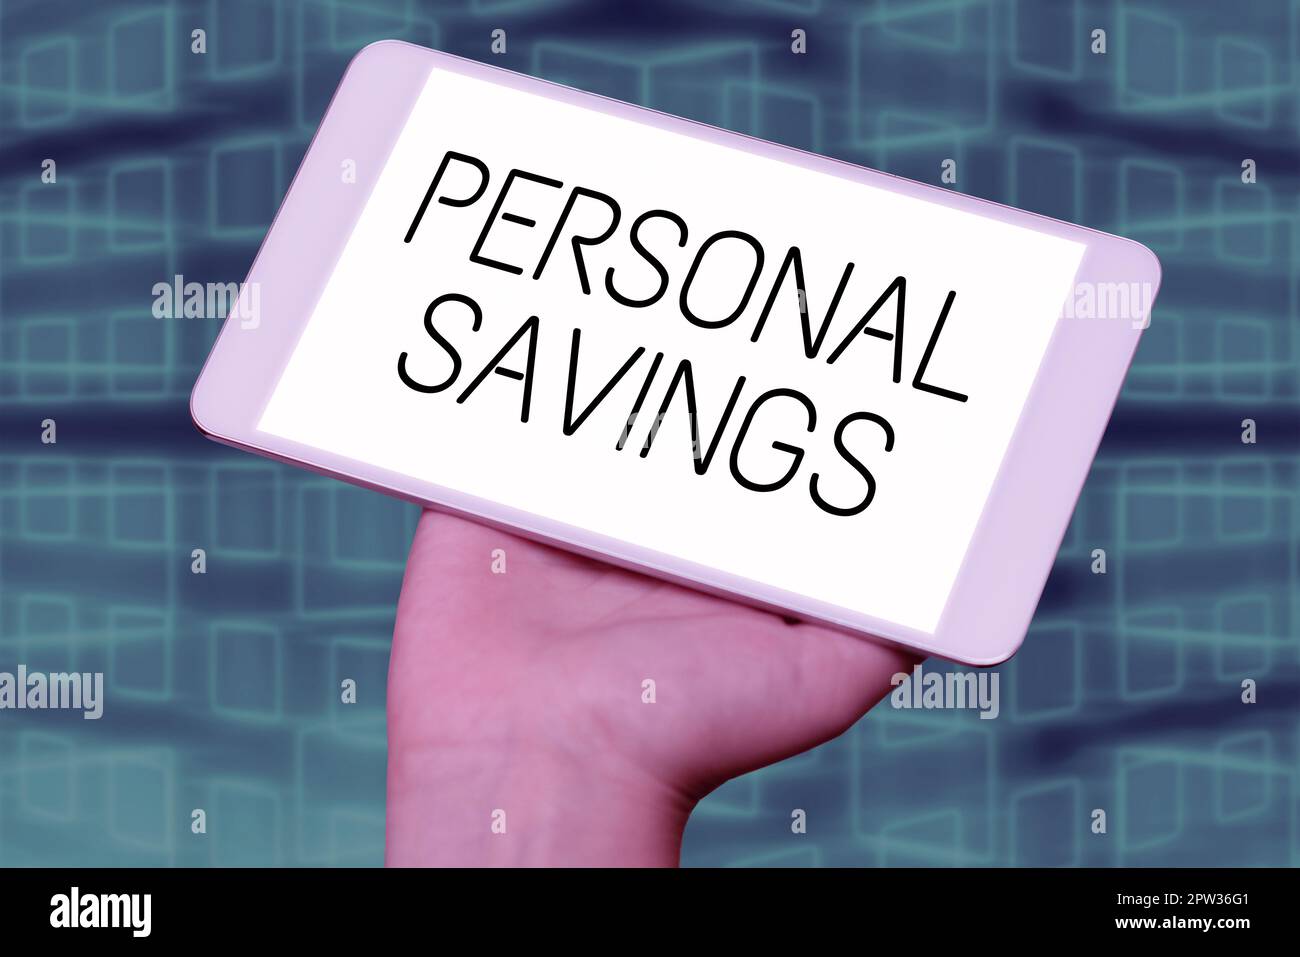 Konzeptionelle Darstellung Persönliche Ersparnisse, Unternehmen zeigen Geld, das eine Person auf einem Konto bei einer Bank oder ähnlichen Konten hat Stockfoto